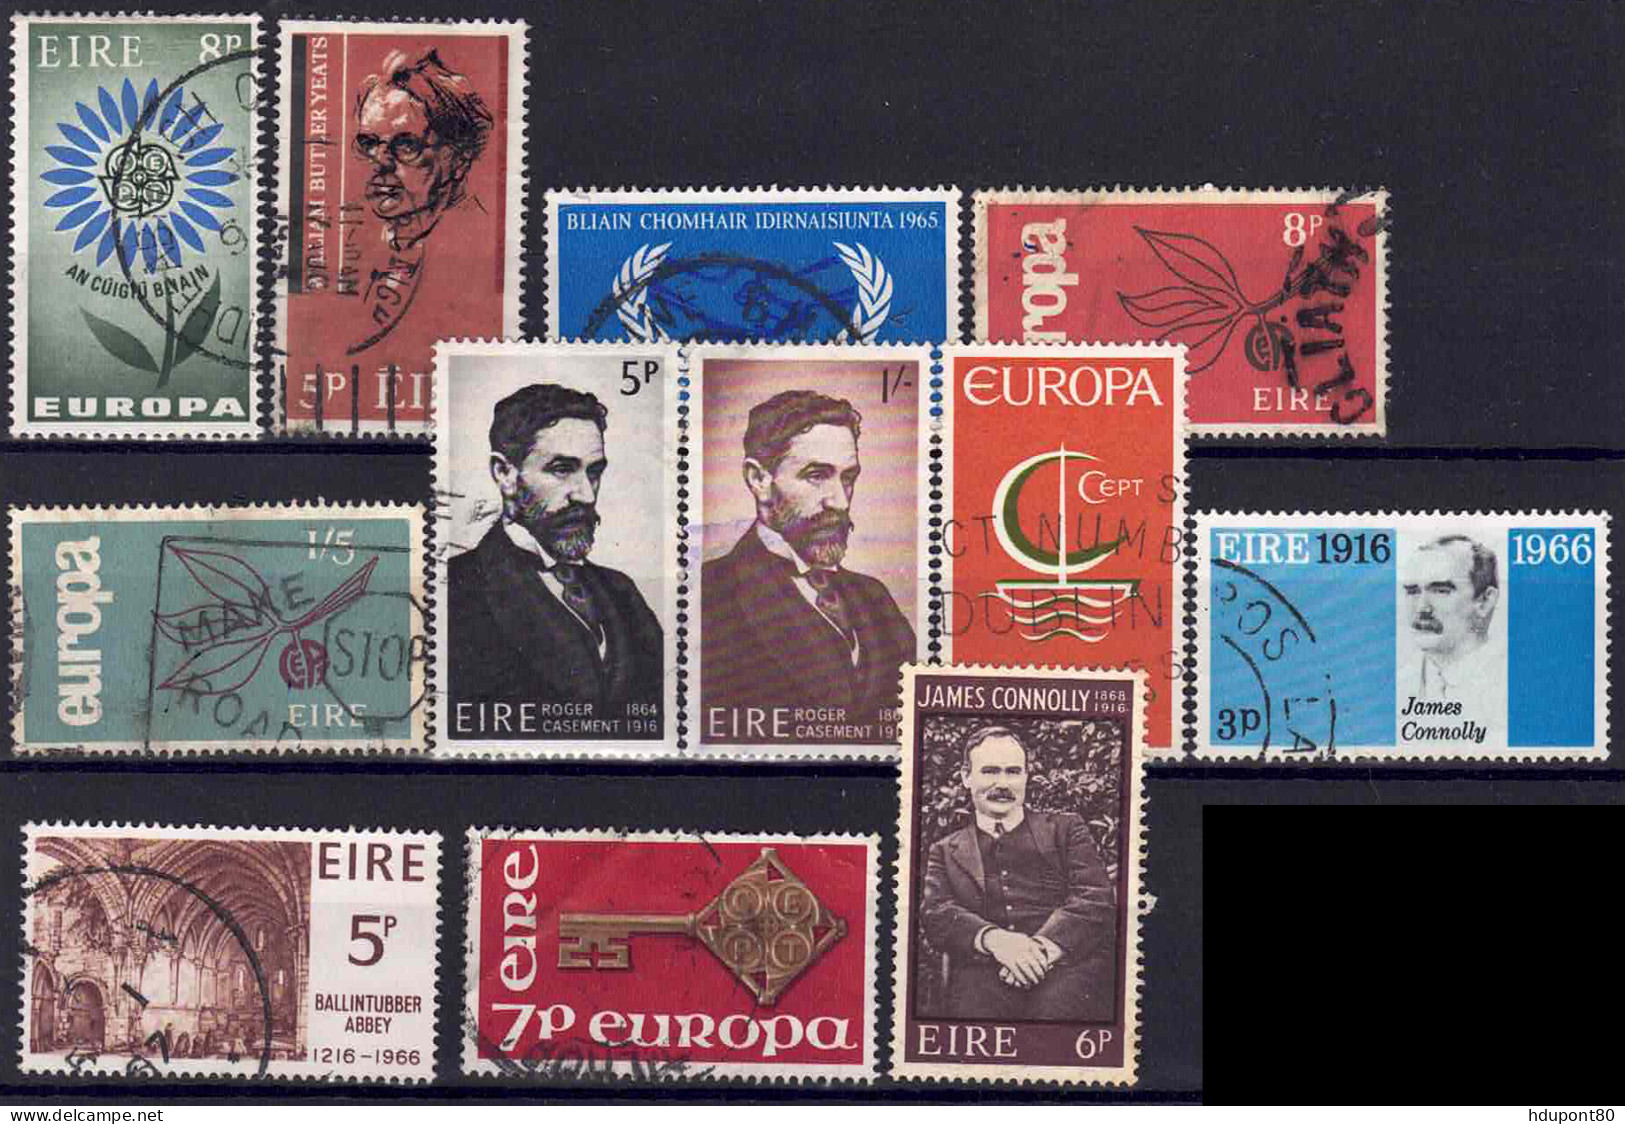 YT  167, 171, 173, 175 à 177, 185 à 187, 189, 203, 207 - Used Stamps